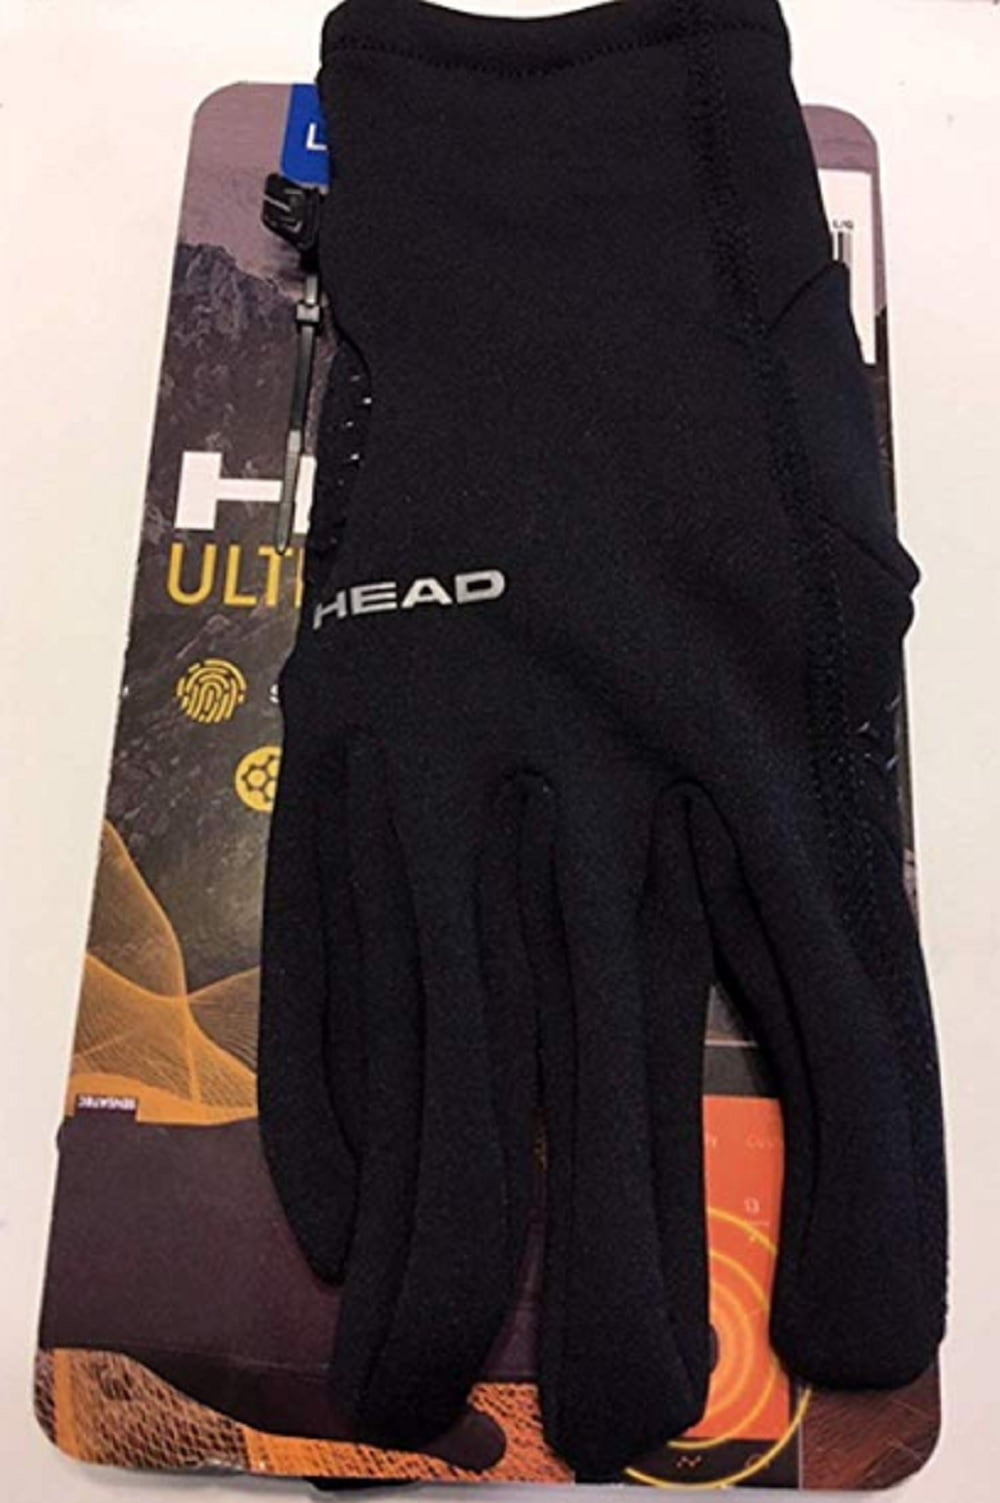 head ultrafit touchscreen running gloves 